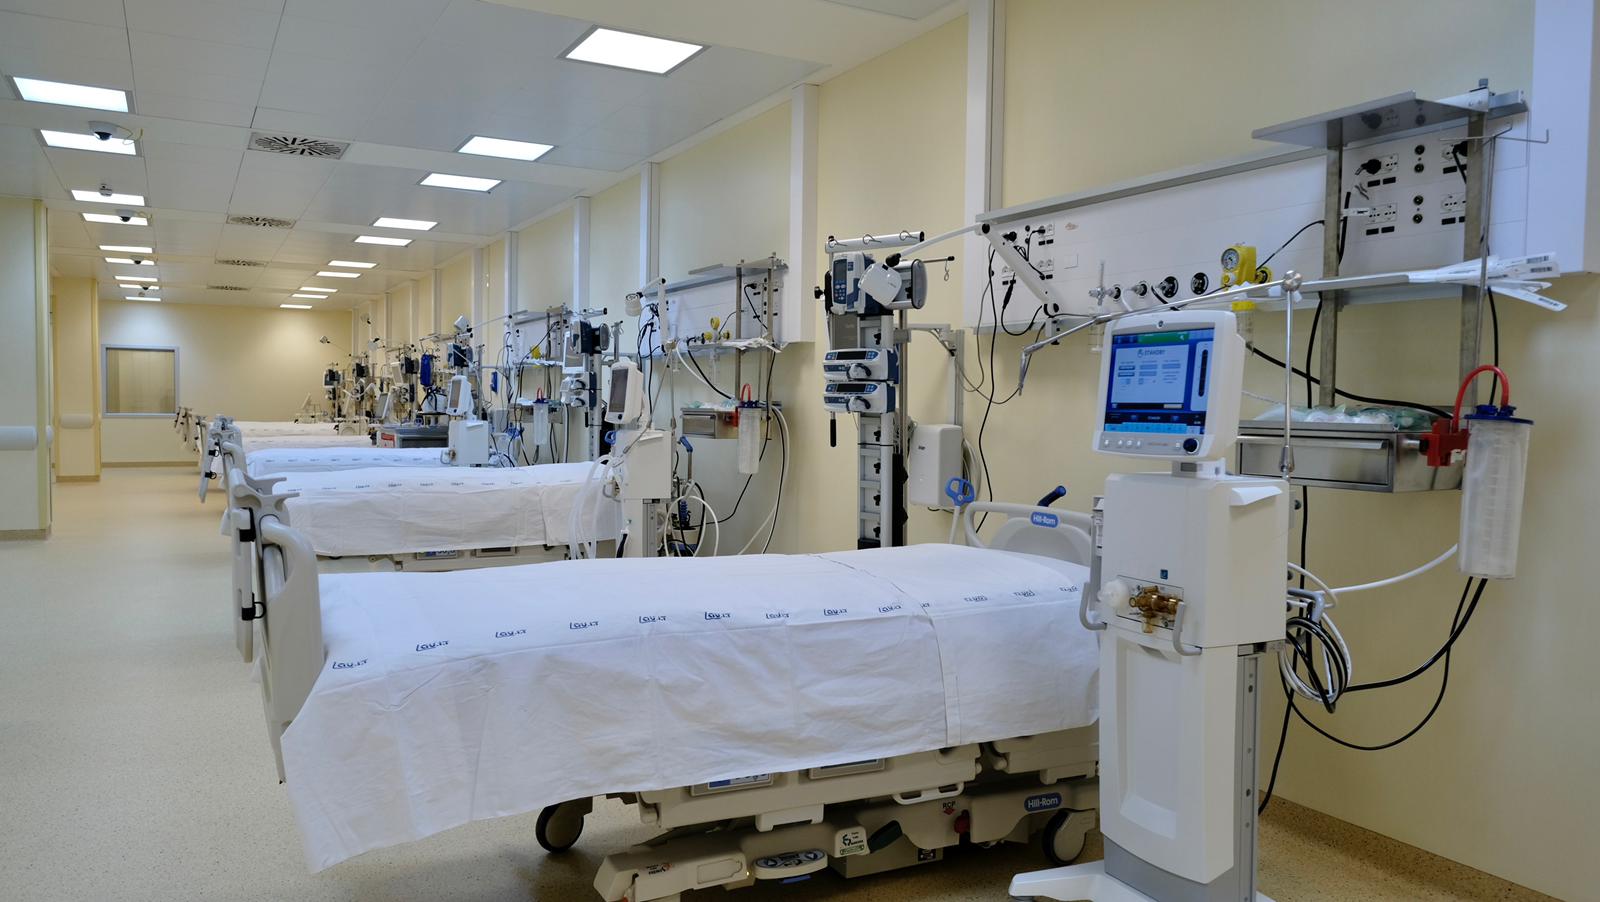 Galleria Potenziamento della rete ospedaliera. Attivati sedici posti di terapia intensiva respiratoria Covid al Dea “V. Fazzi” - Diapositiva 3 di 19